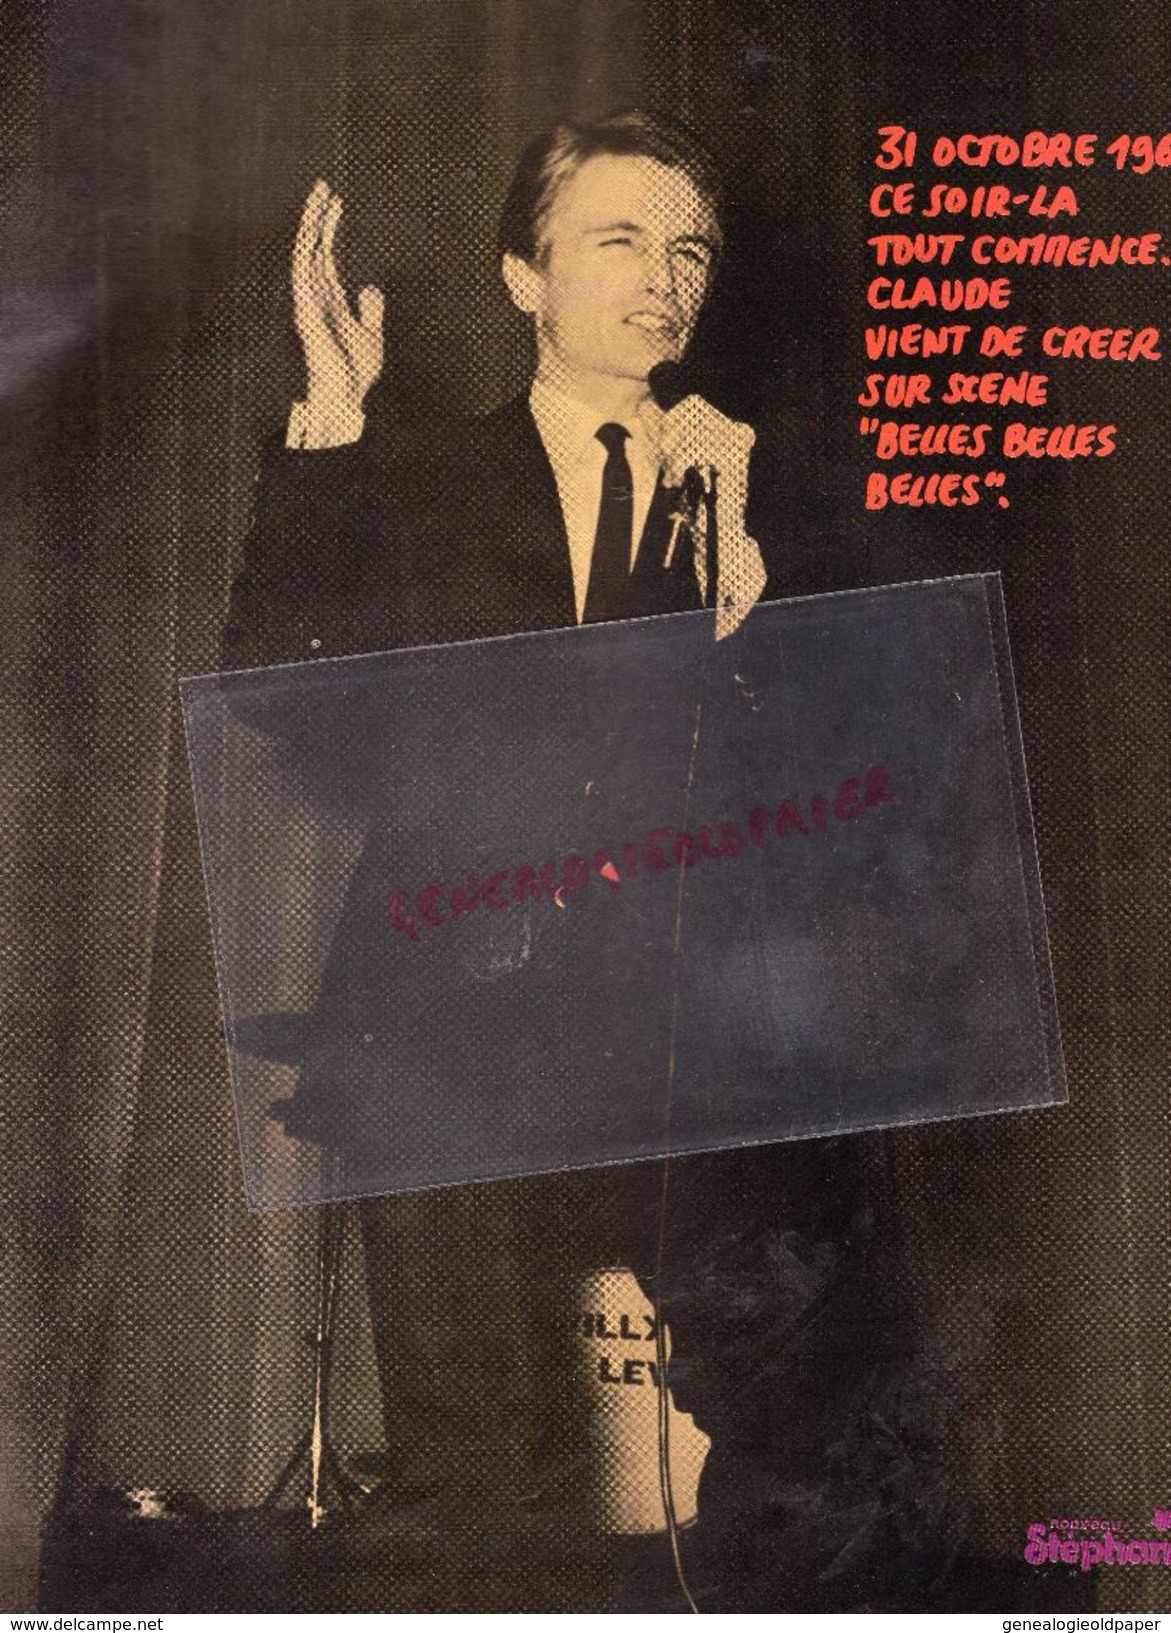 CLAUDE FRANCOIS - L' ALBUM SOUVENIRS NOUVEAU STEPHANIE HORS SERIE 1978 - Historical Documents